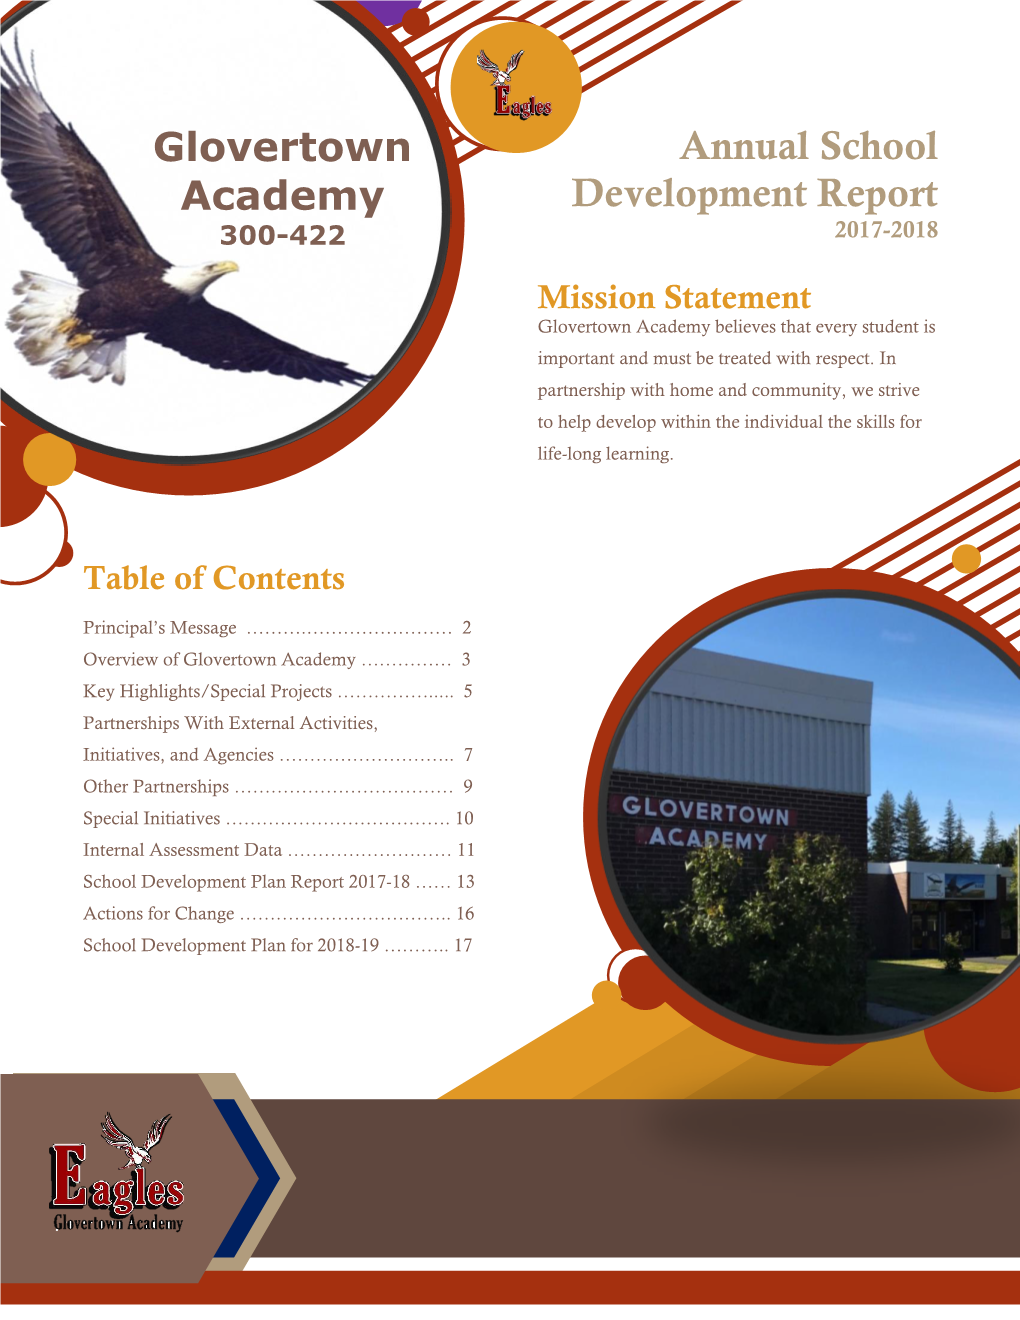 Glovertown Academy Annual School Development Report